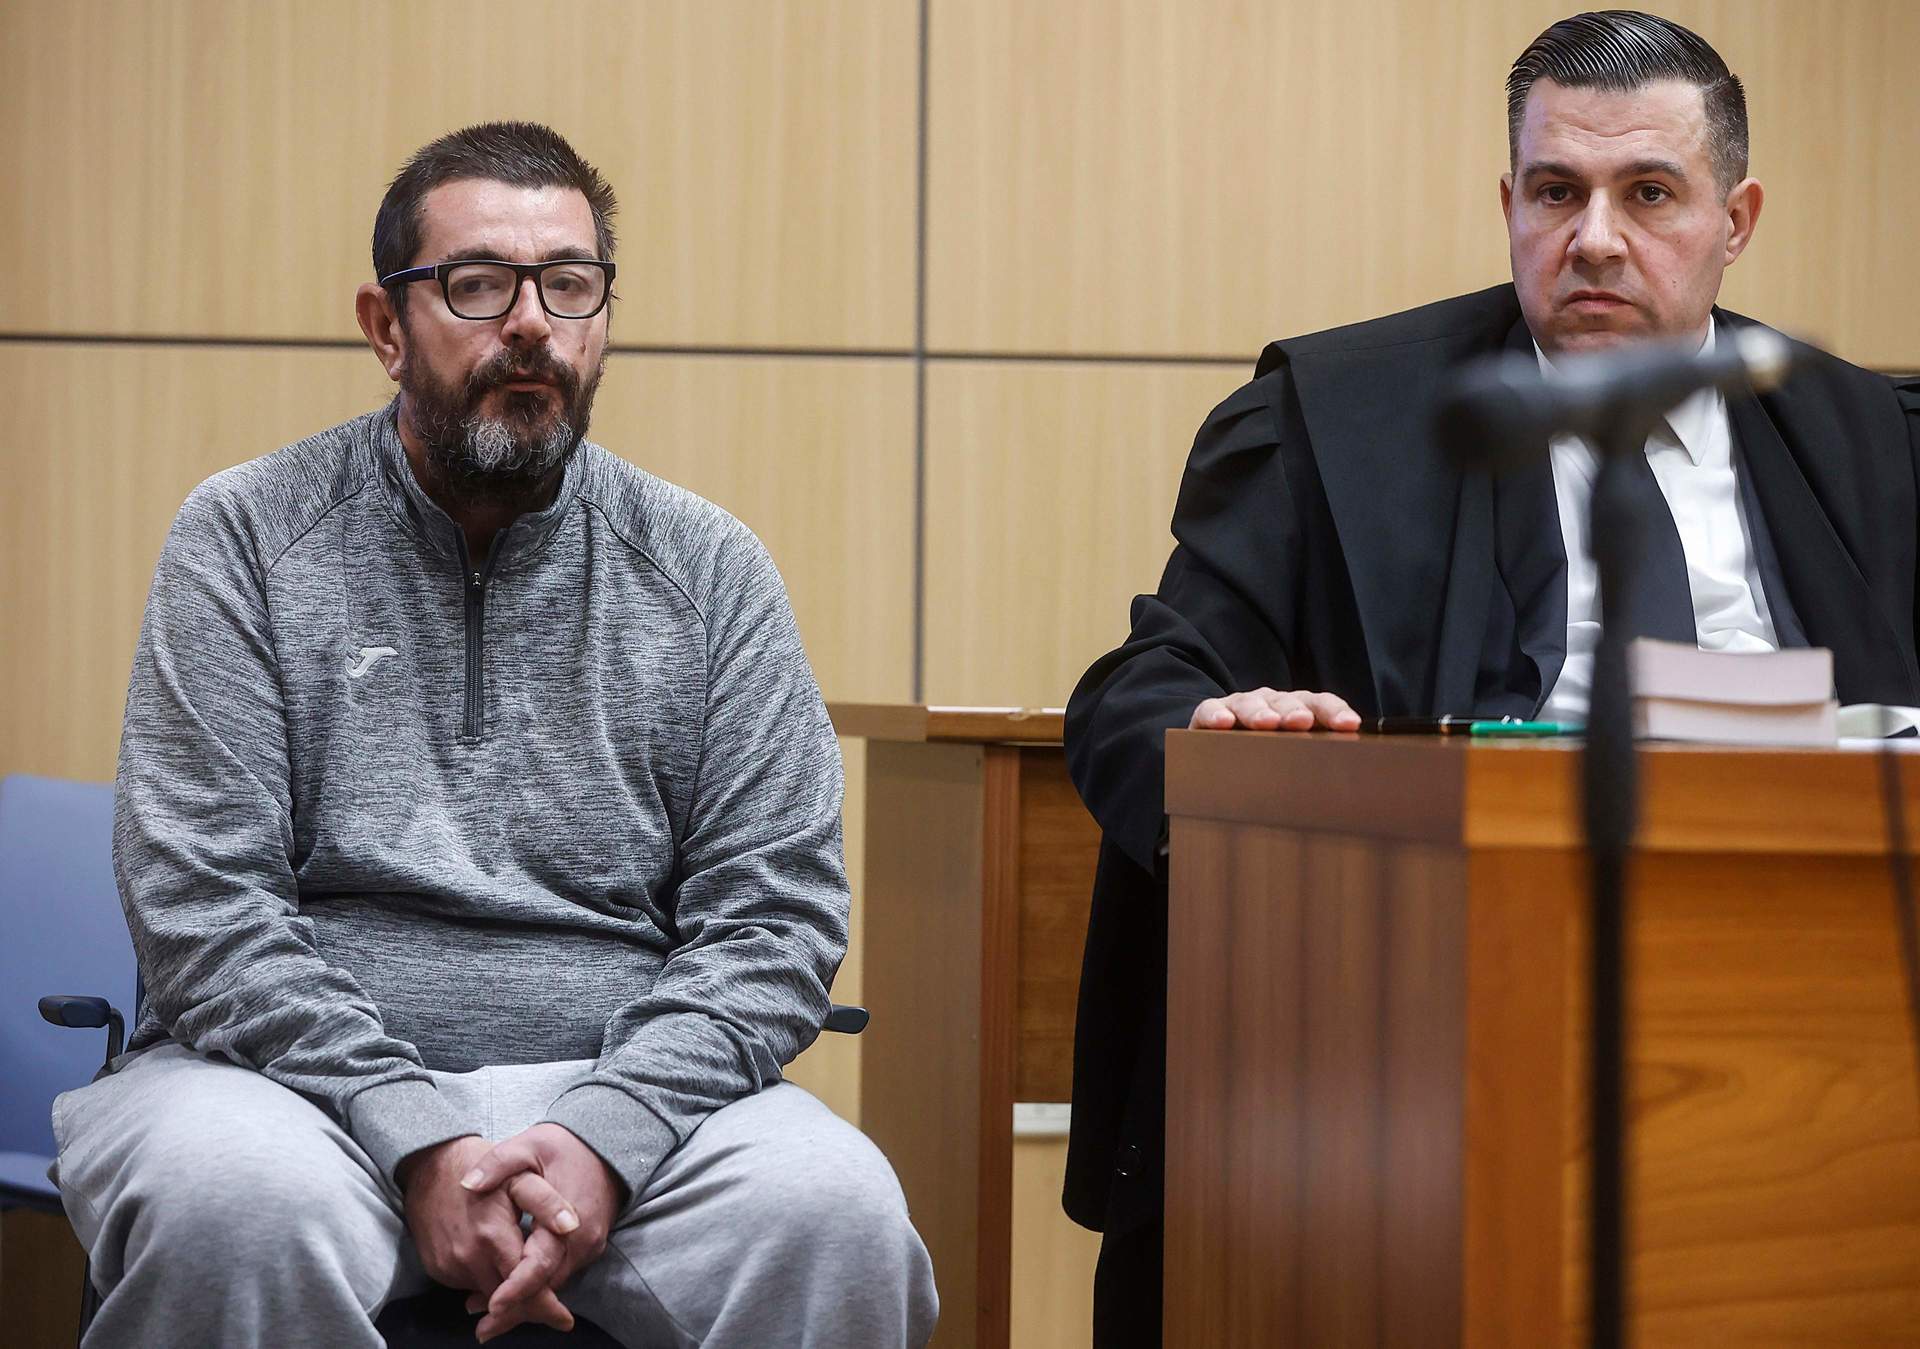 El hombre que confesó haber matado a su hijo en Sueca (Valencia) tras separarse de su mujer, culpable de asesinato